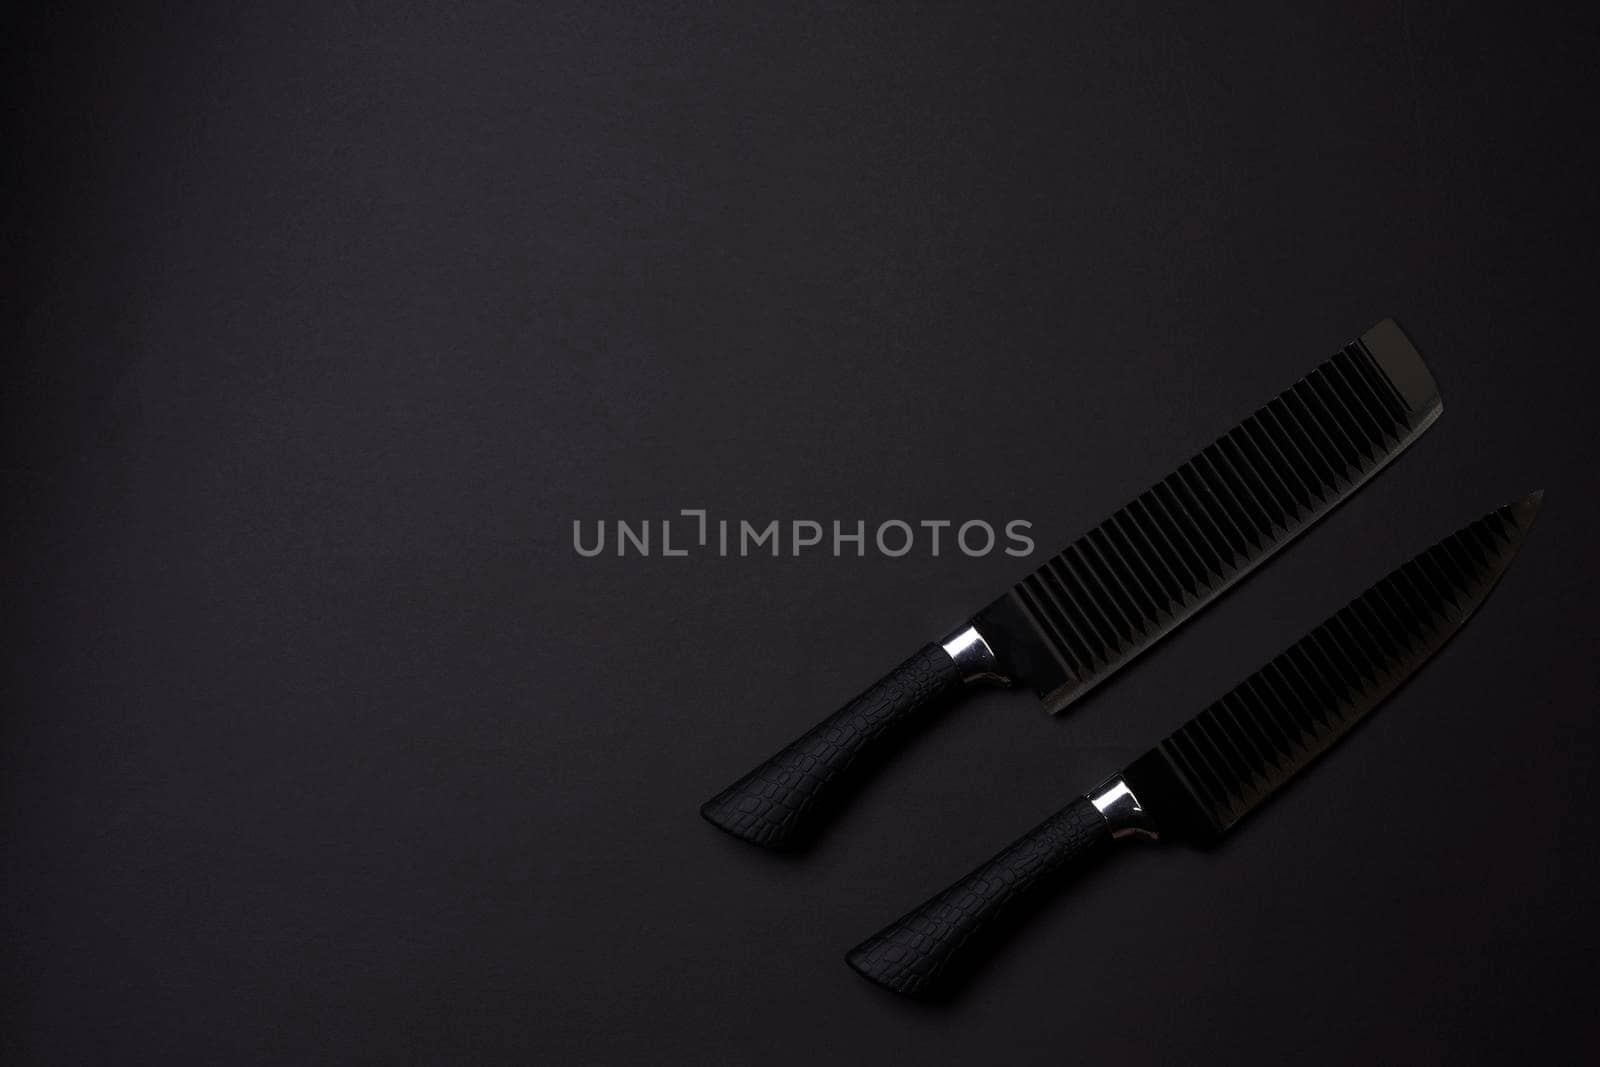 Black friday concept. Set of sharp kitchen knifes. Black knifes on dark background